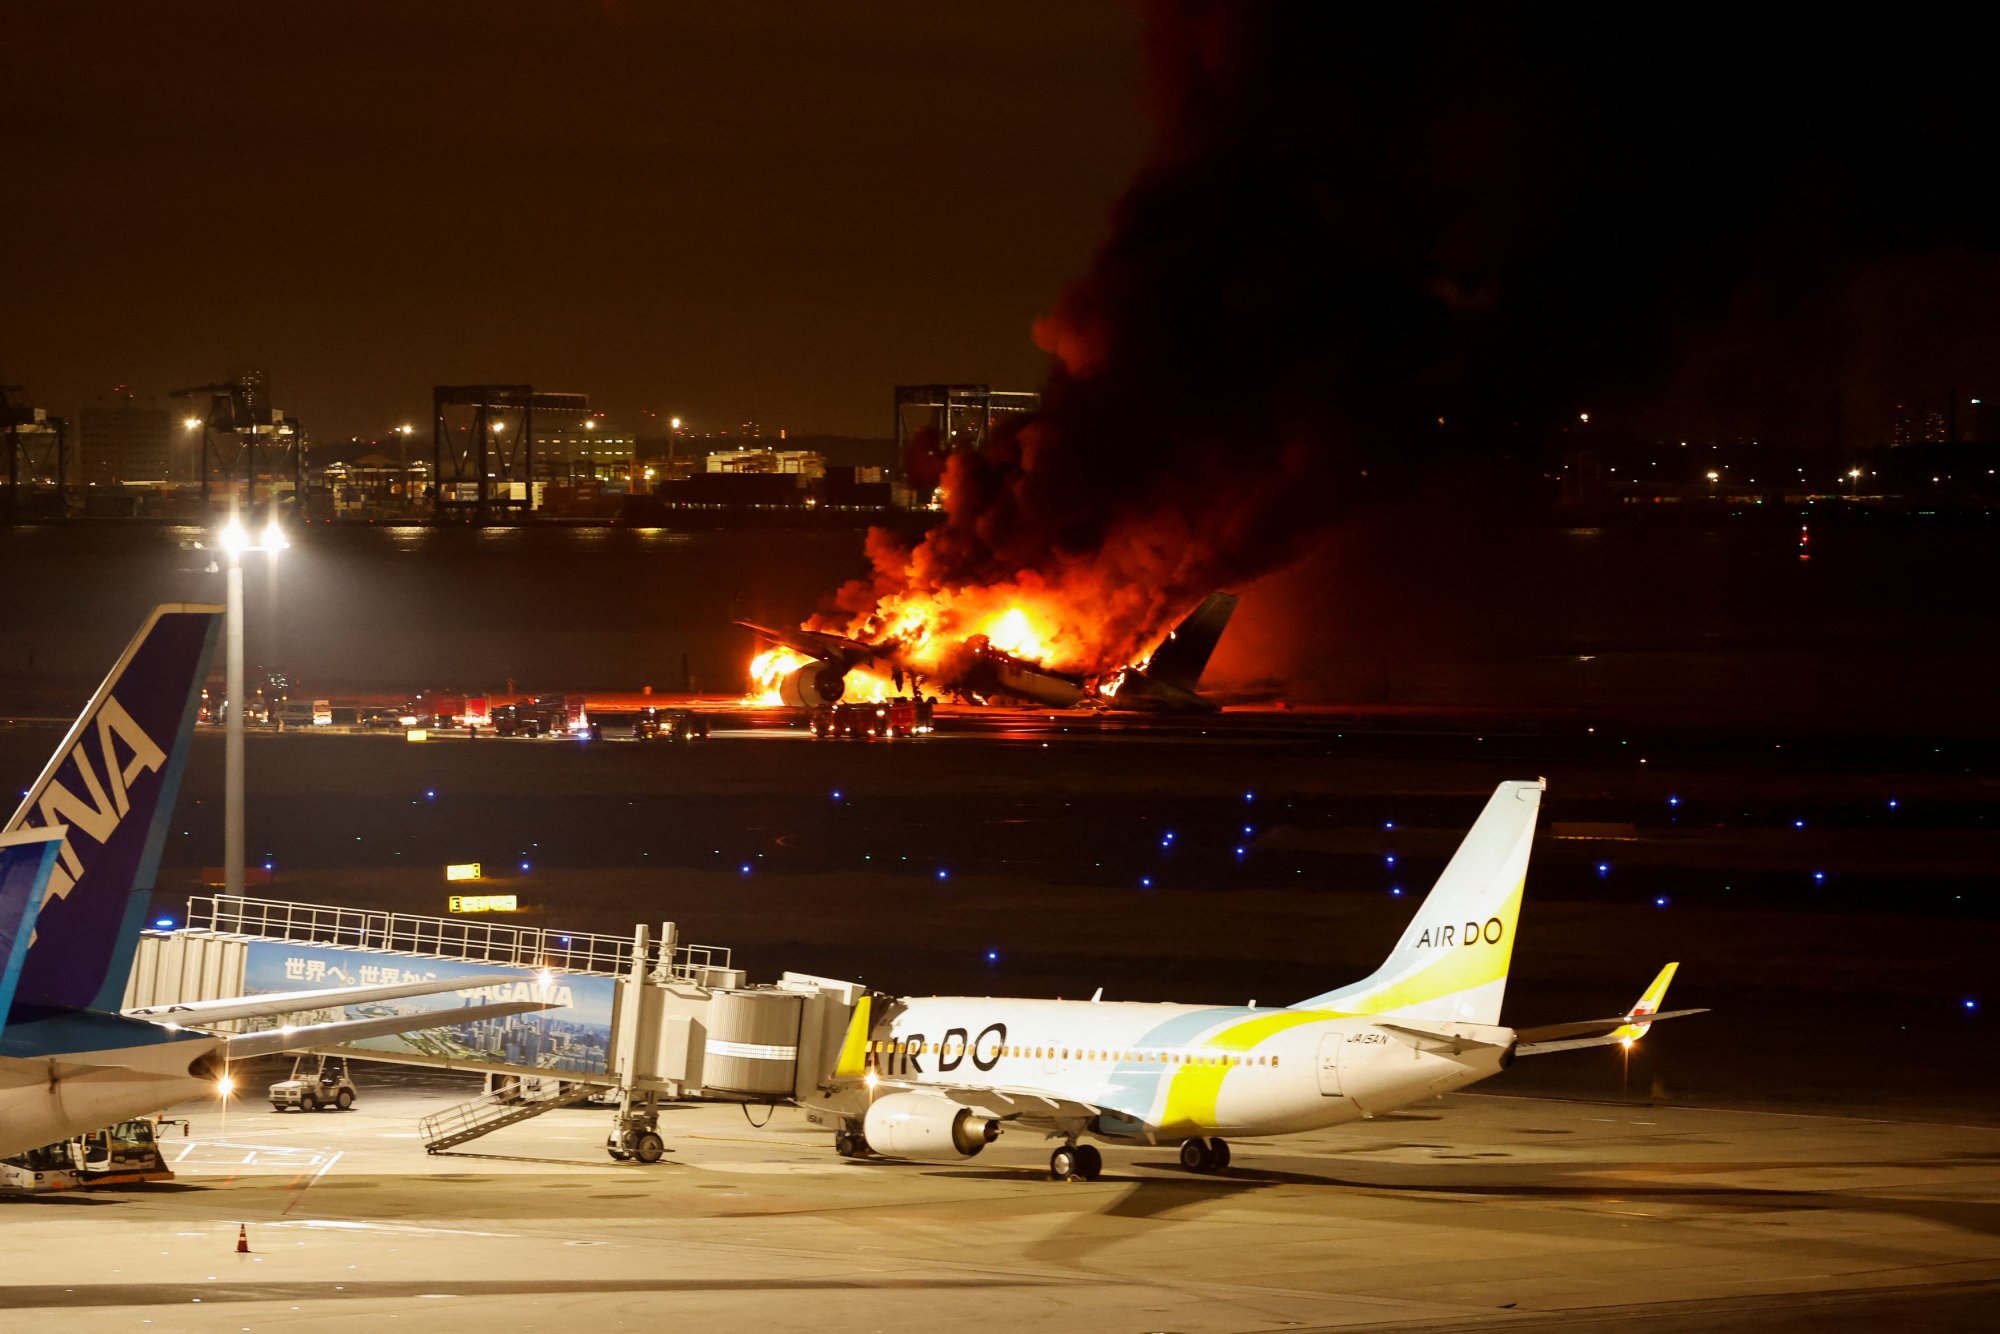 Πώς συνέβη το δυστύχημα με το φλεγόμενο αεροσκάφος στο Τόκιο - Δραματικό βίντεο από τη διάσωση